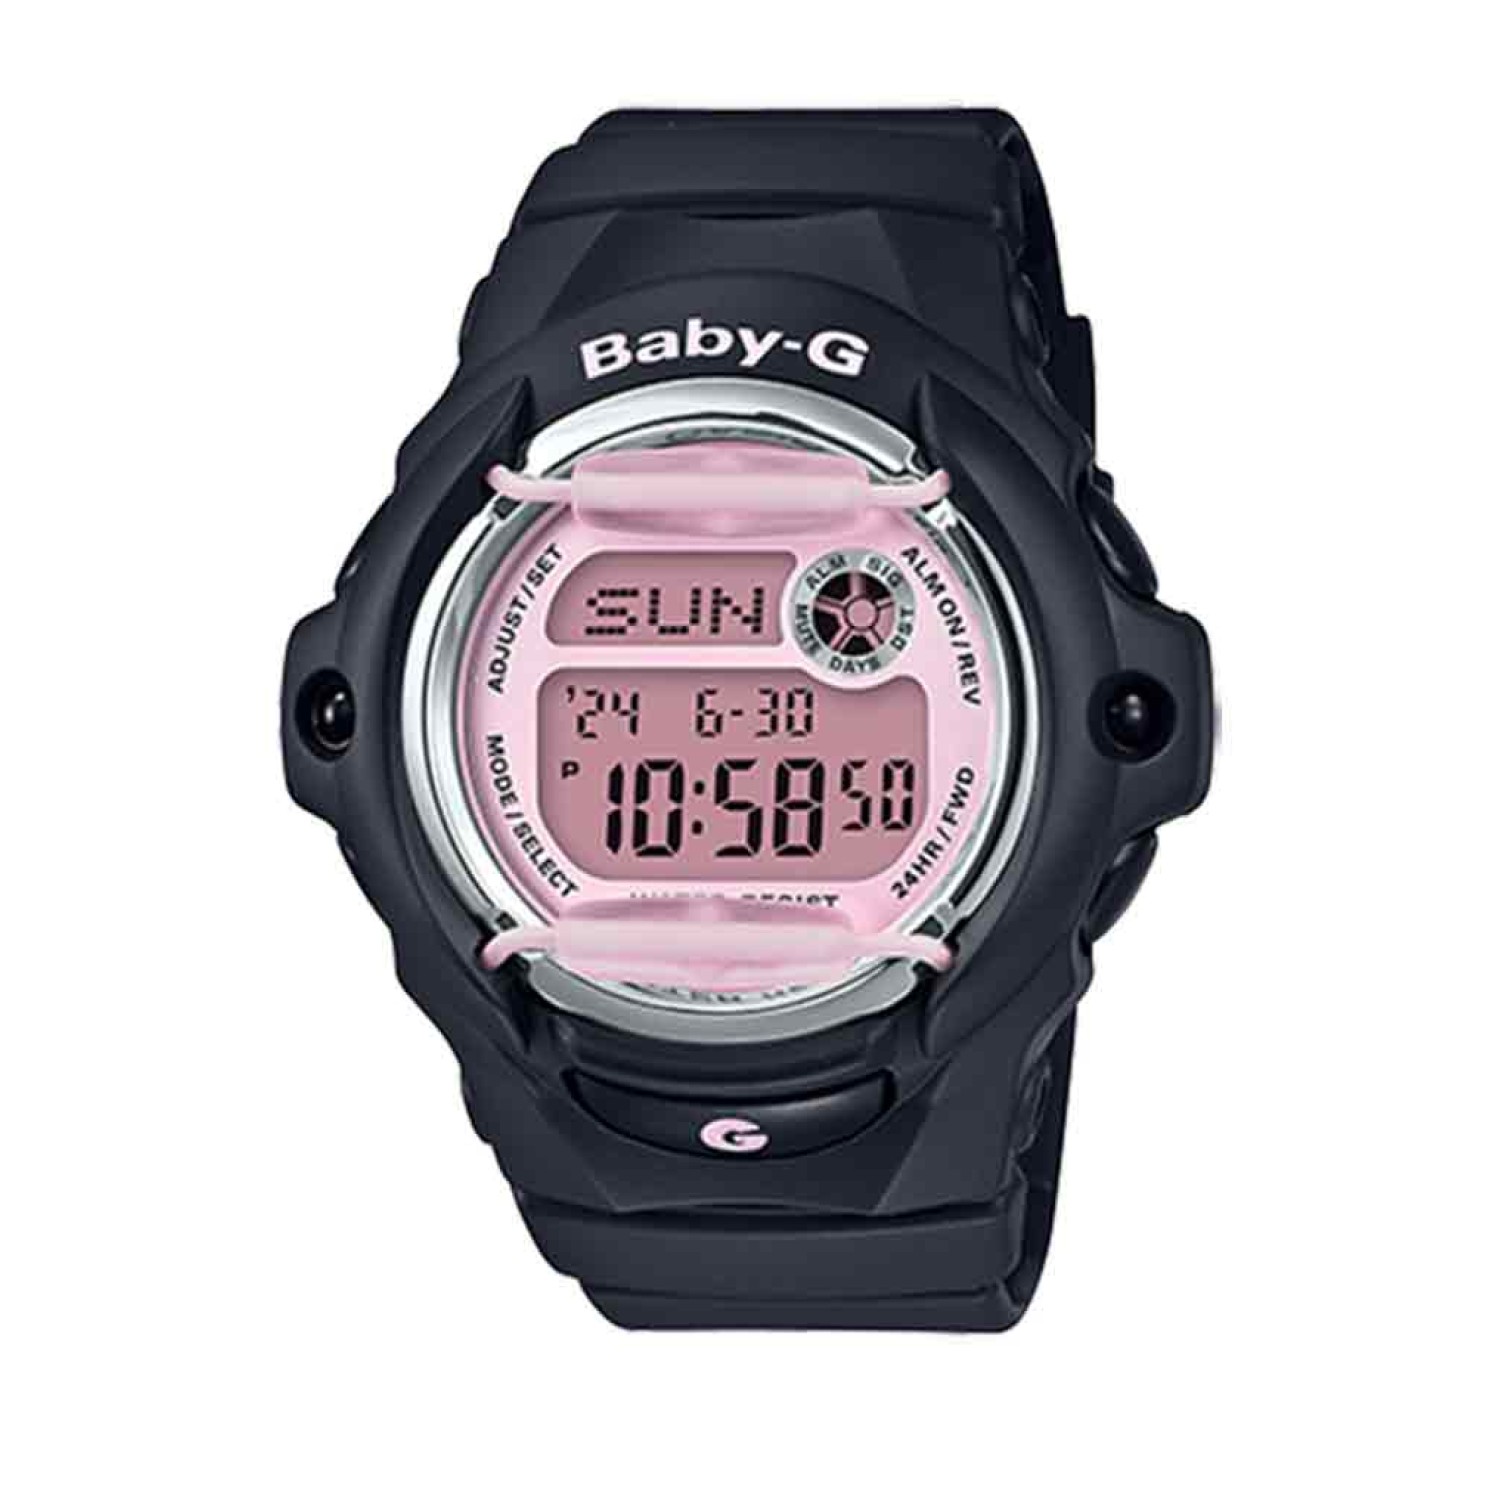 BG169M-1D Casio BabY-G Pink Series Watch.casio watches nz sale $219.00